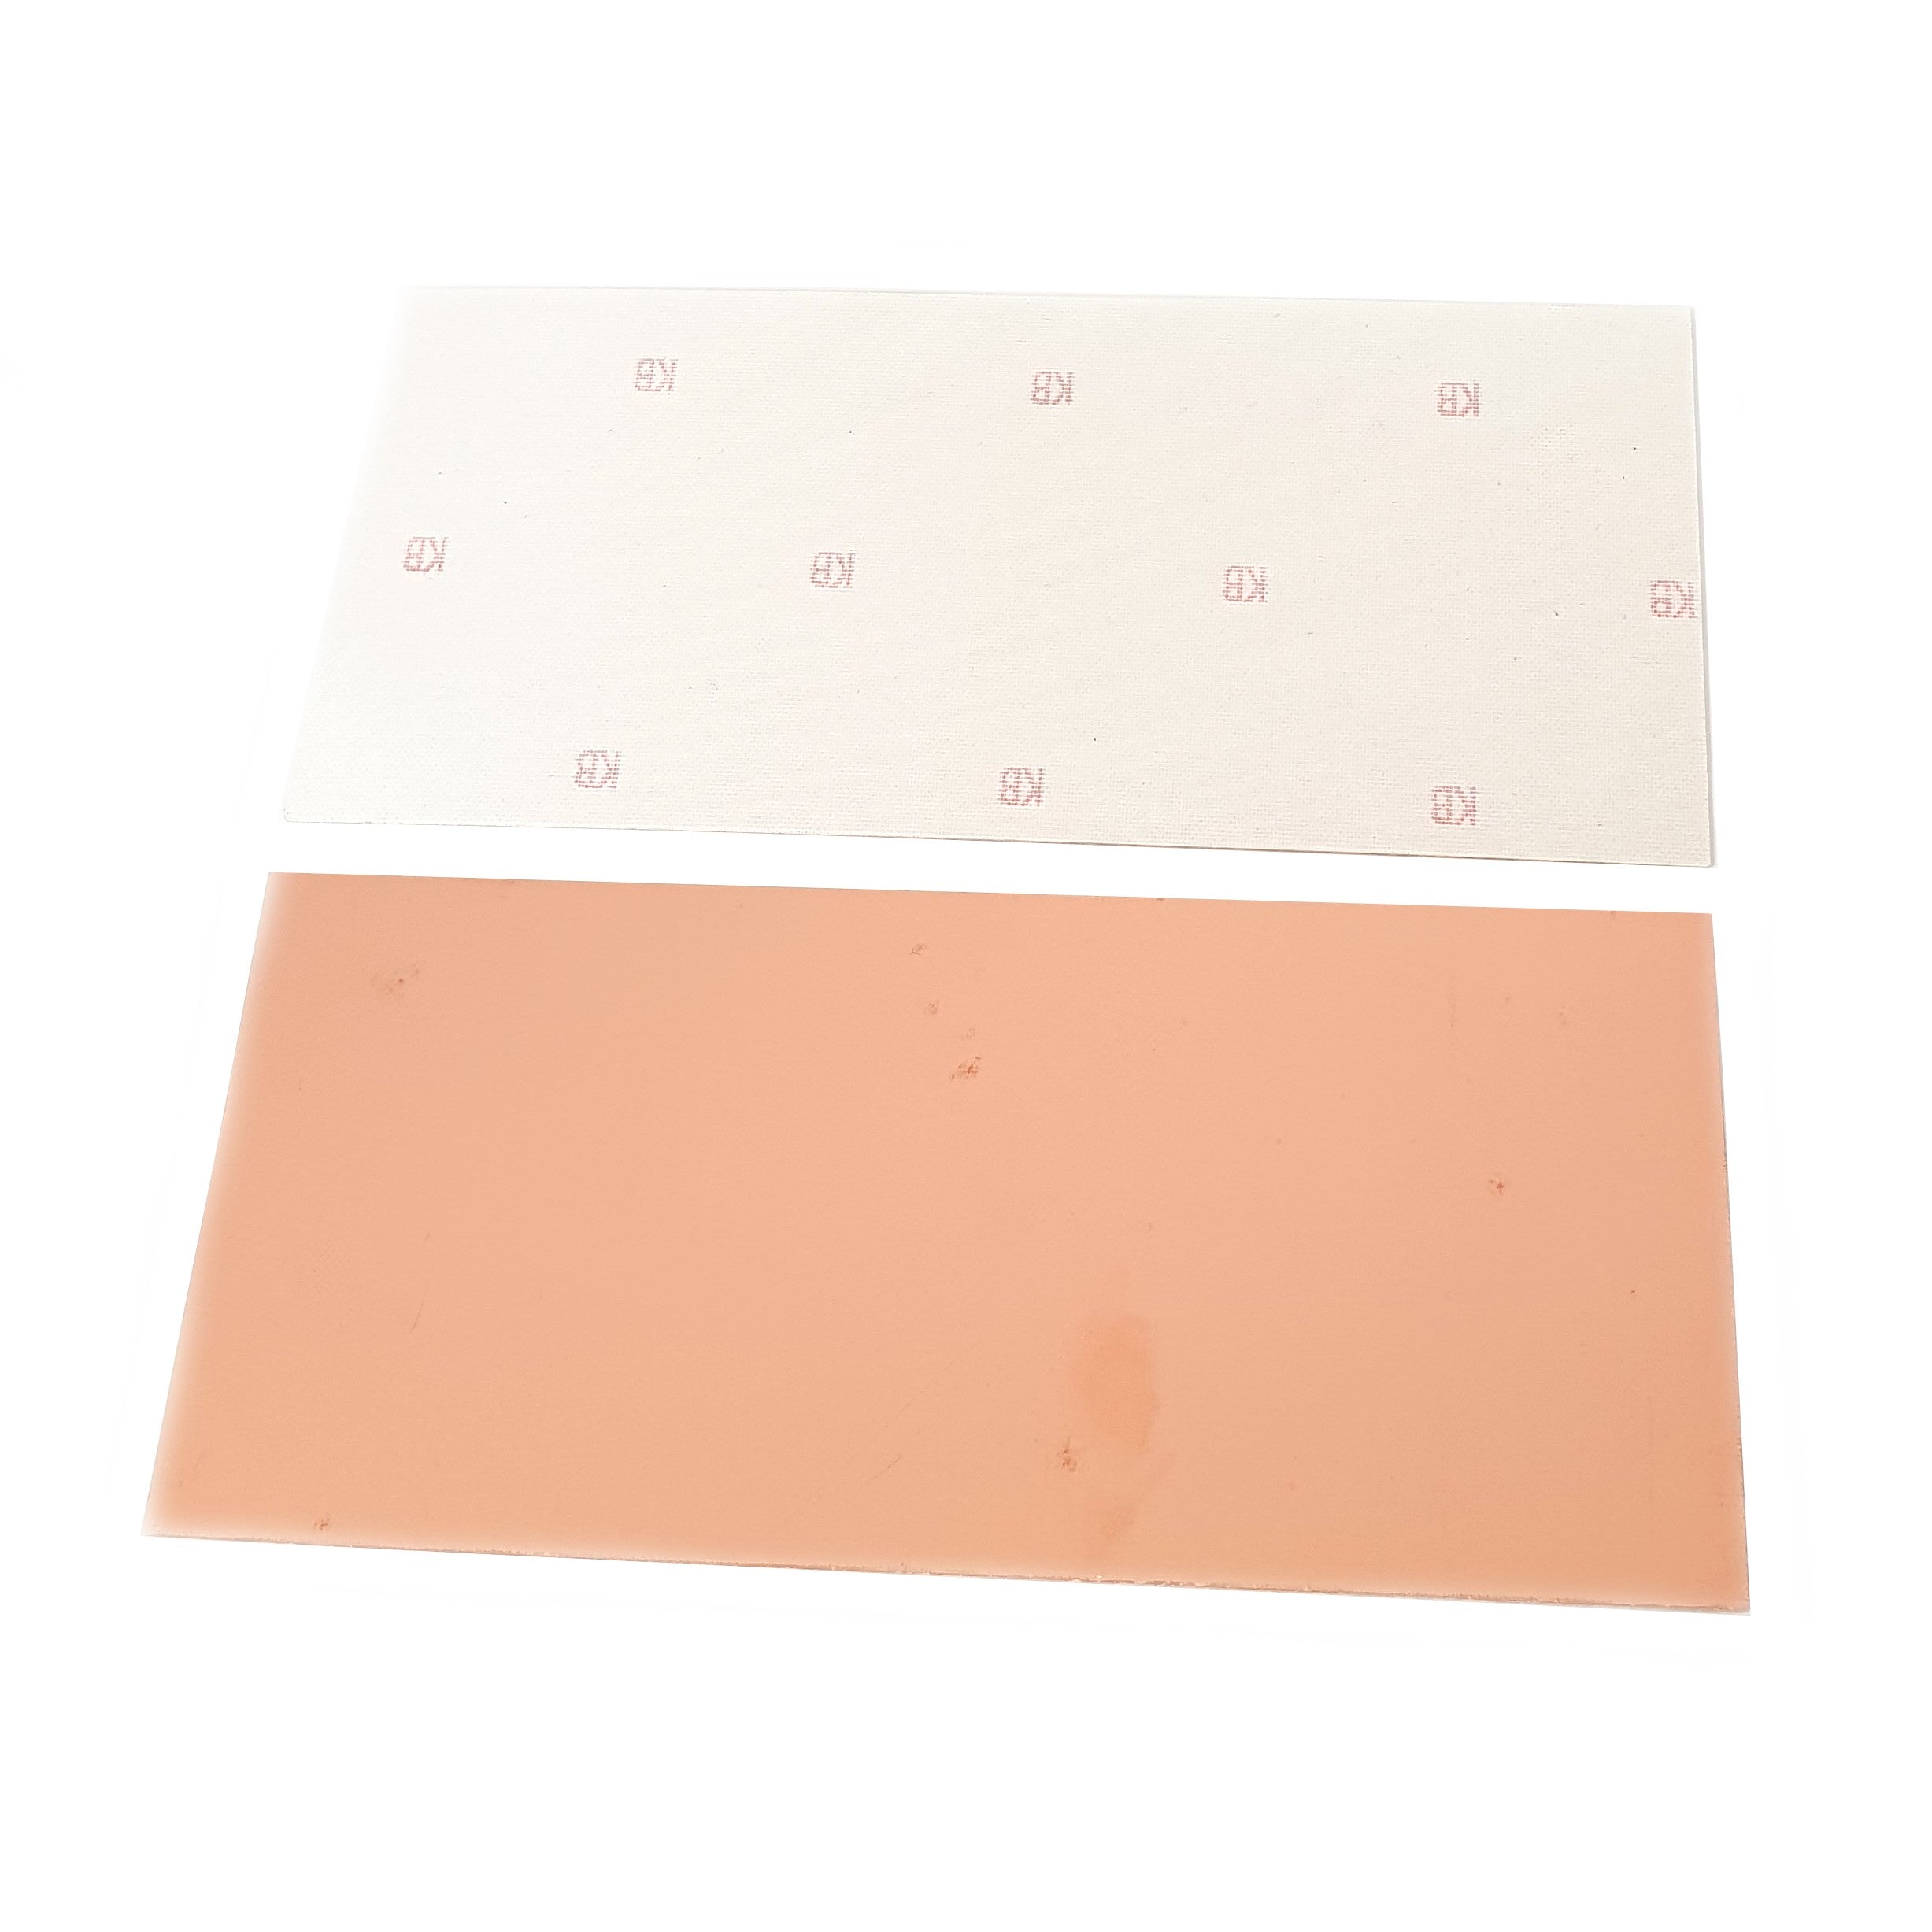 Single Sided Copper Clad Board 100x160mm